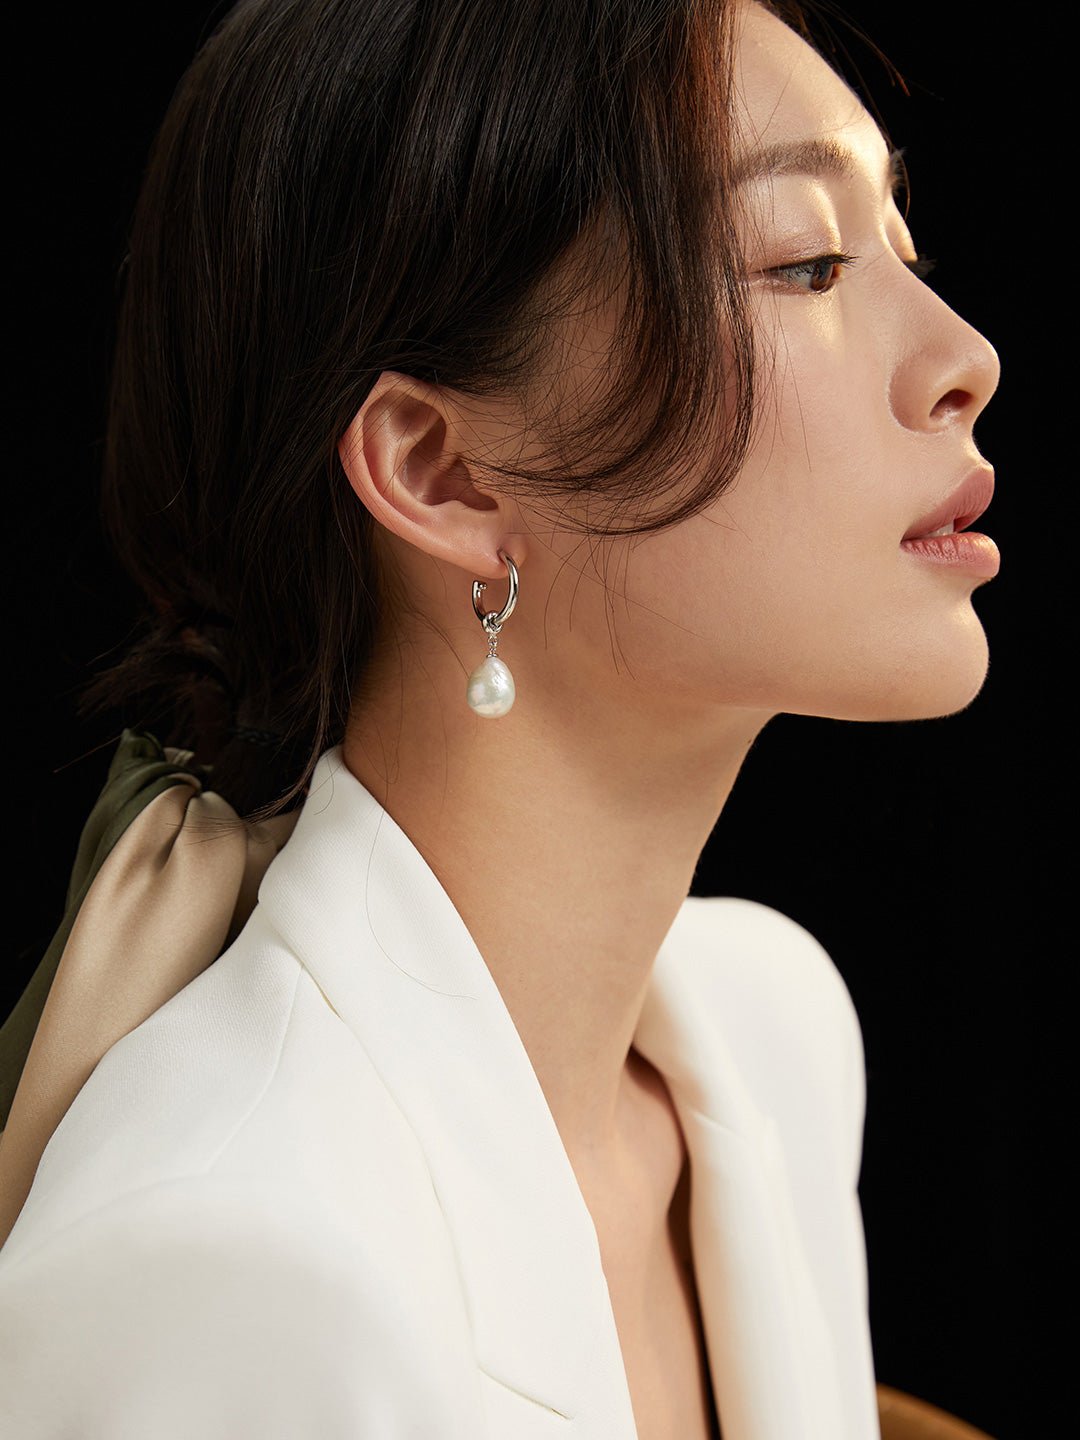 Shaped Baroque Pearls Two-Wear Earrings - floysun